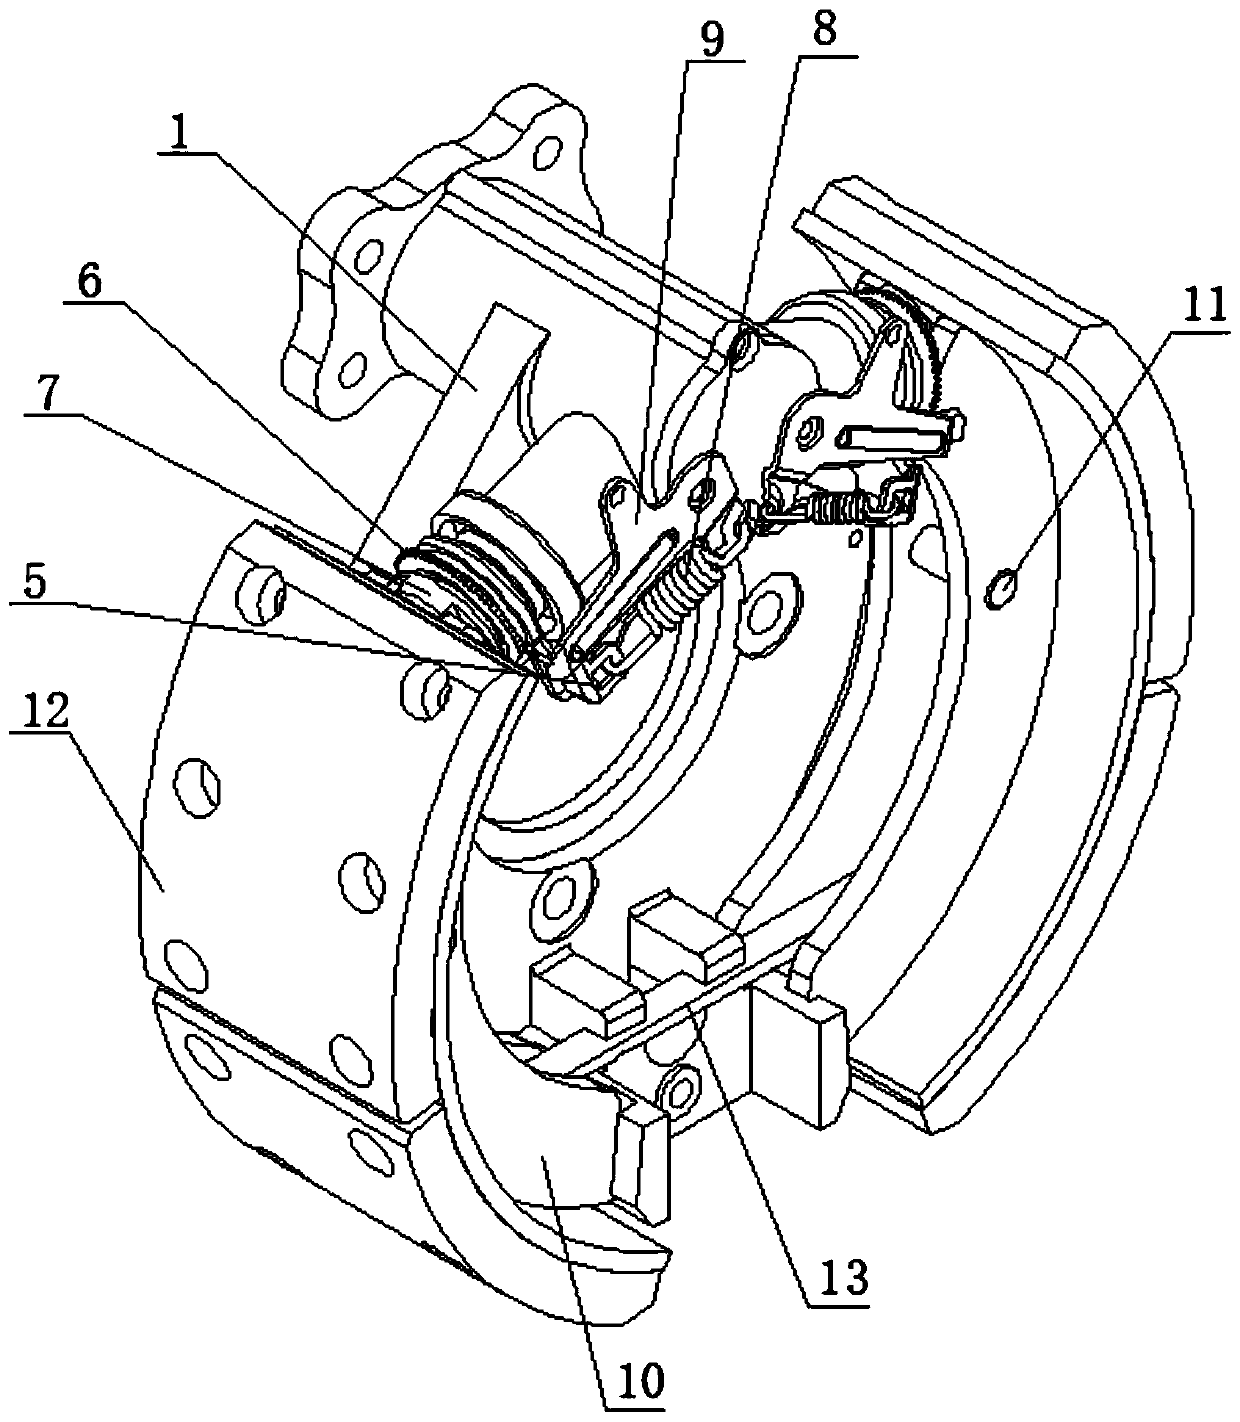 Self-adjusting type crank drum type brake